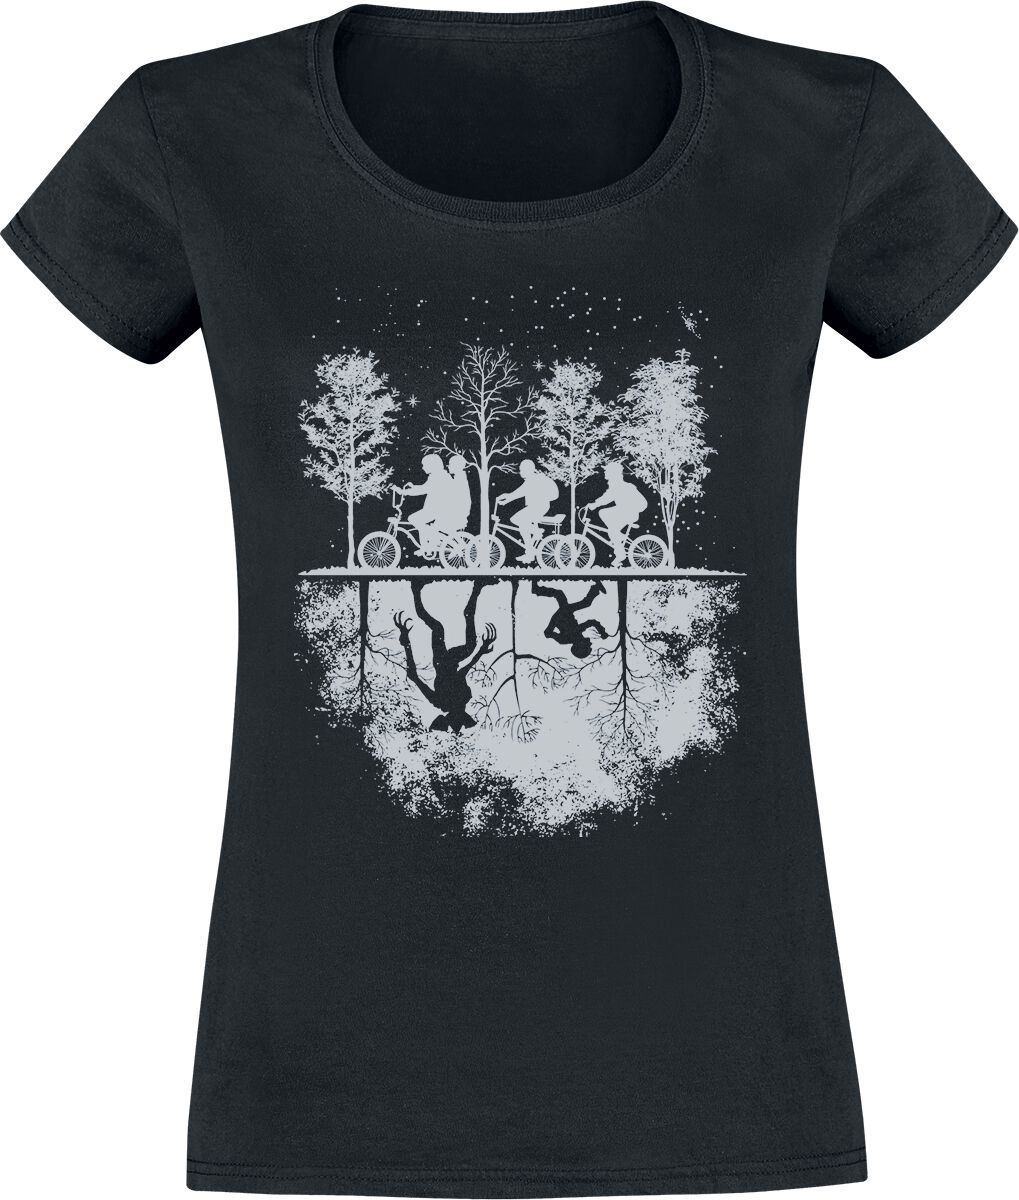 Stranger Things T-Shirt - Upside Down - S bis XXL - für Damen - Größe L - schwarz  - EMP exklusives Merchandise!